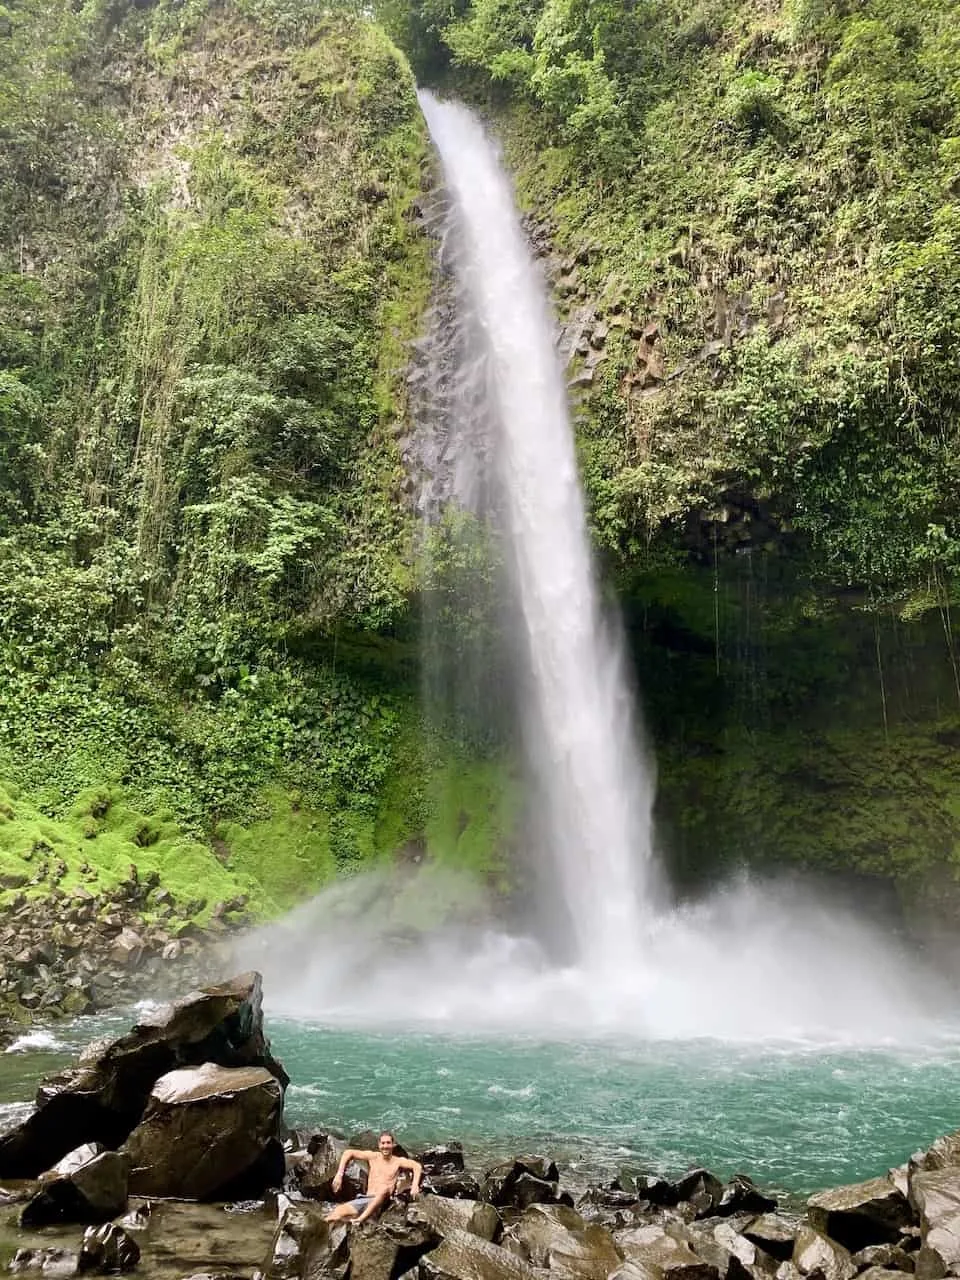 La Fortuna Waterfall Hike